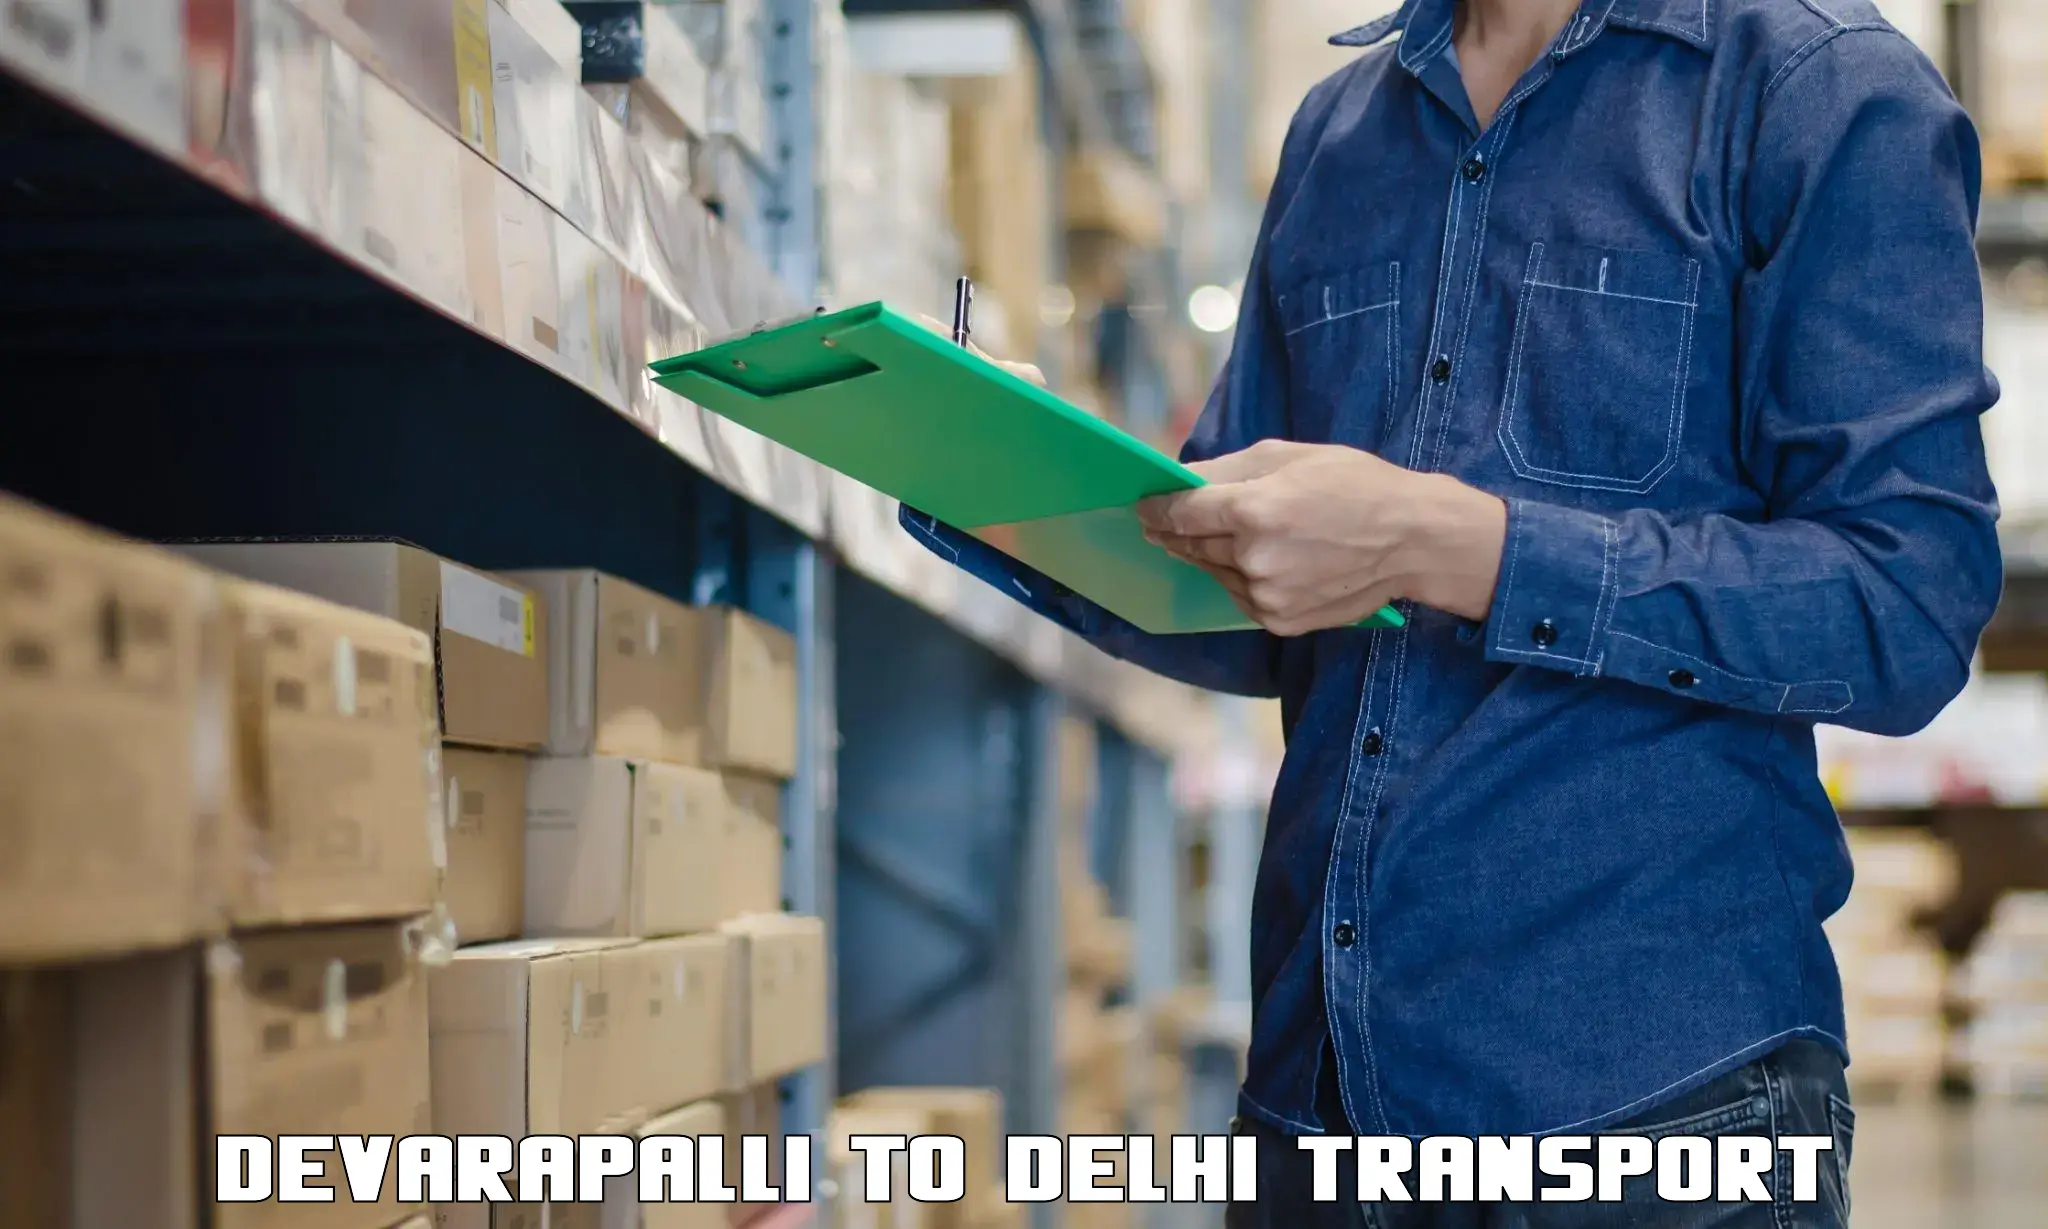 Nationwide transport services Devarapalli to IIT Delhi